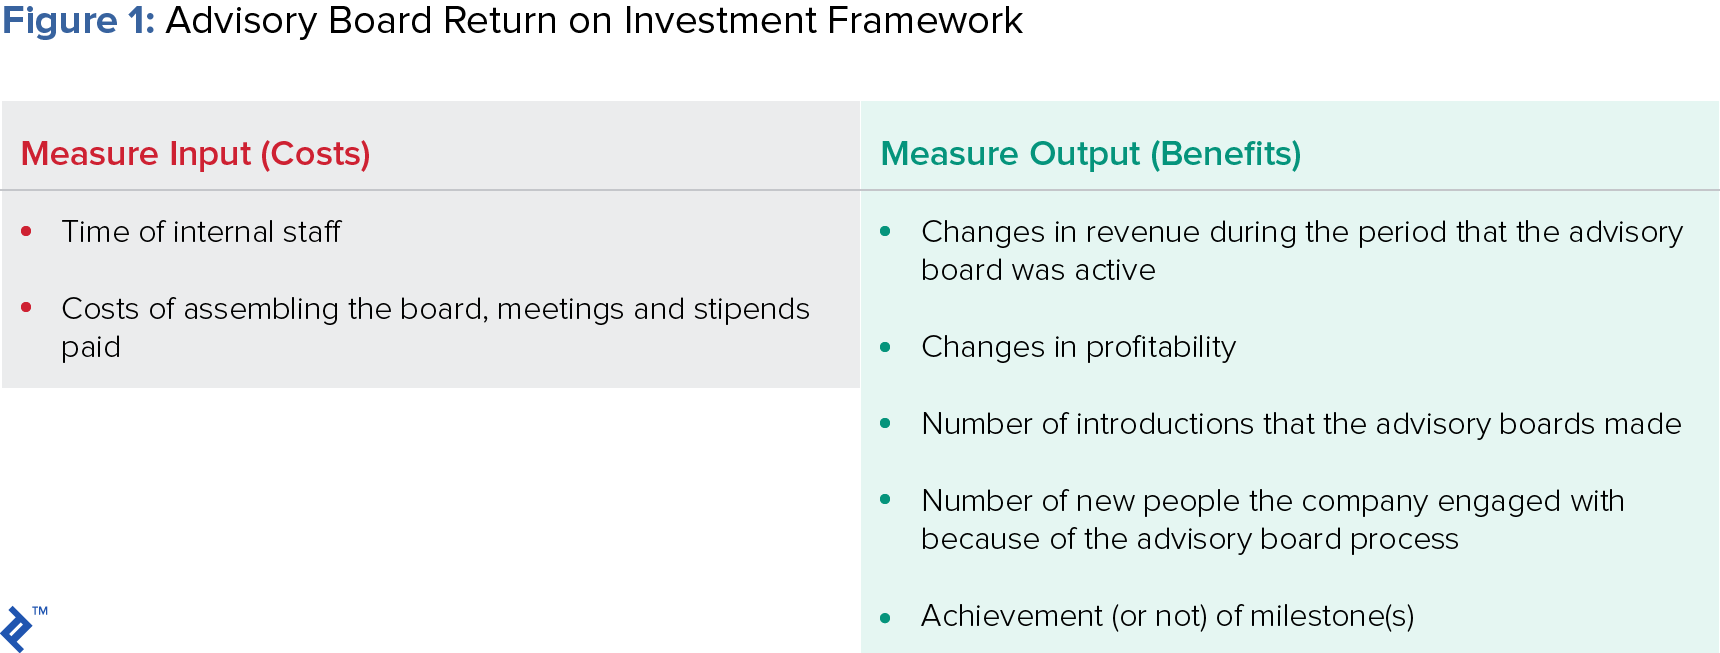 咨询委员会投资回报框架图